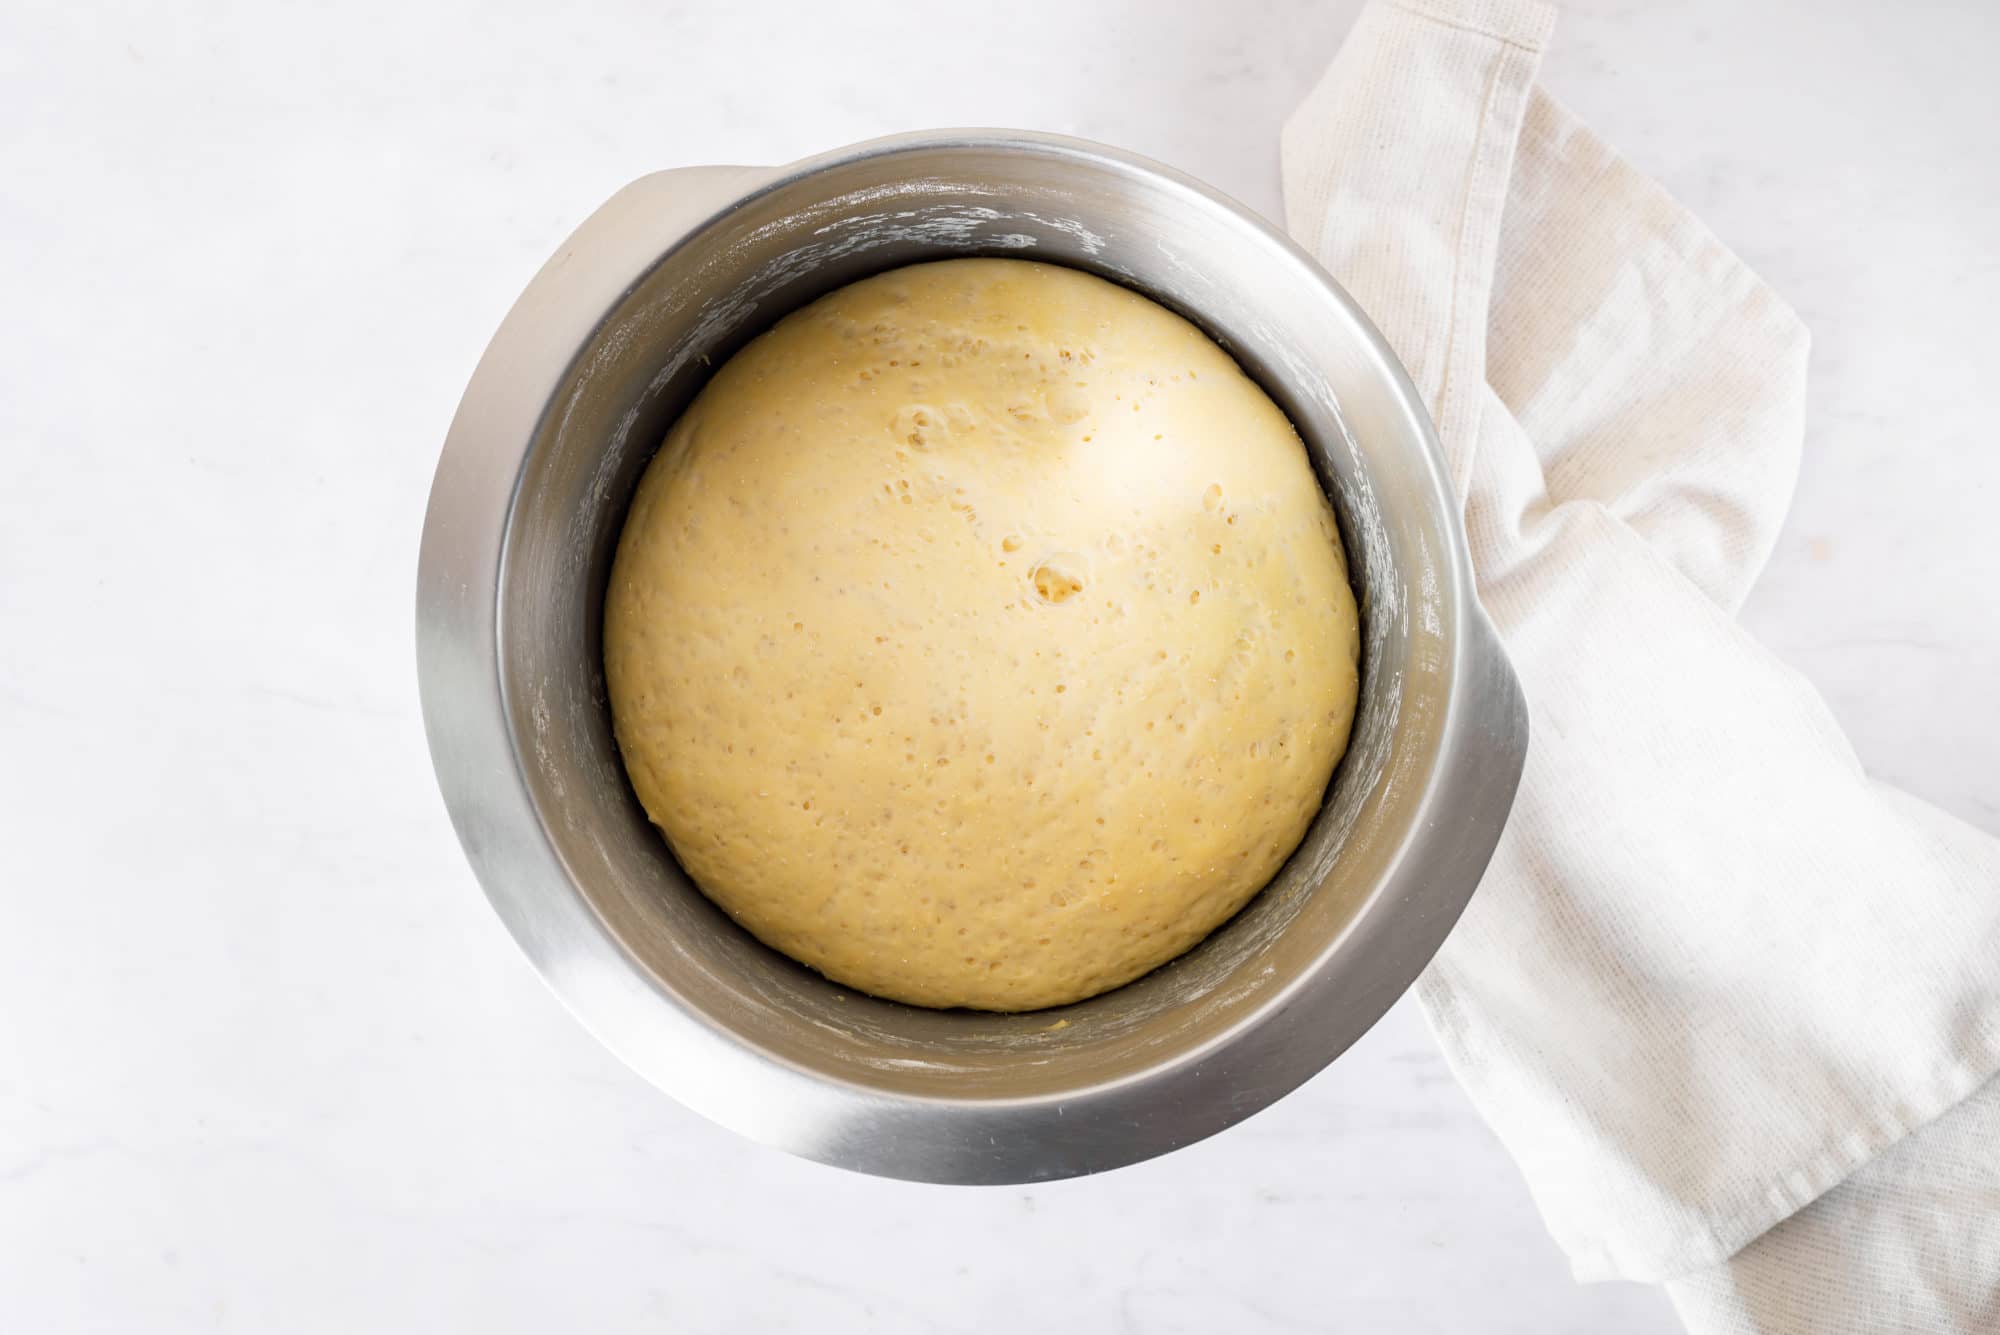 Risen dough for piroshki in a bowl.